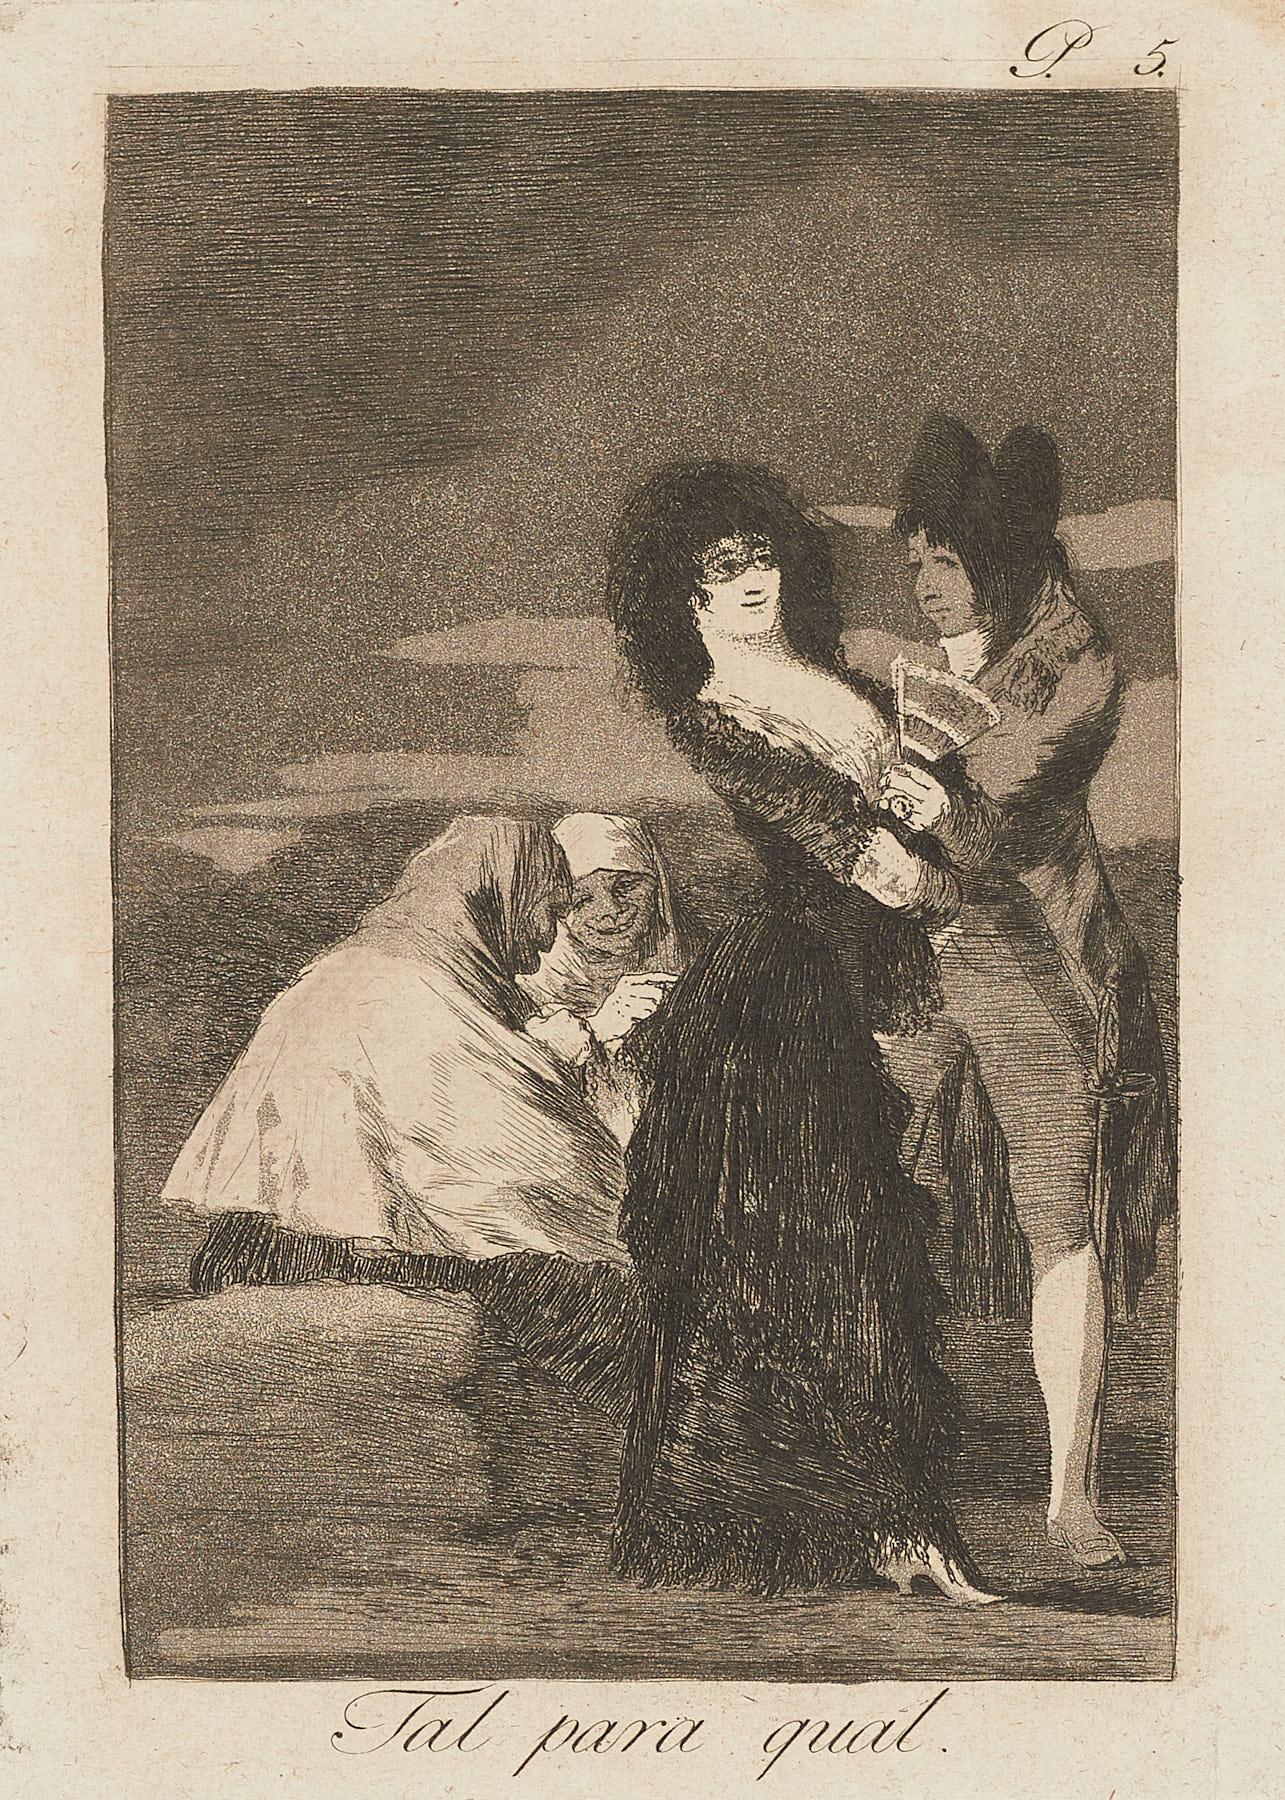 Francisco De Goya Caprichos Tal para cual 1ère édition d'impression d'art originale espagnol - Print de Francisco Goya